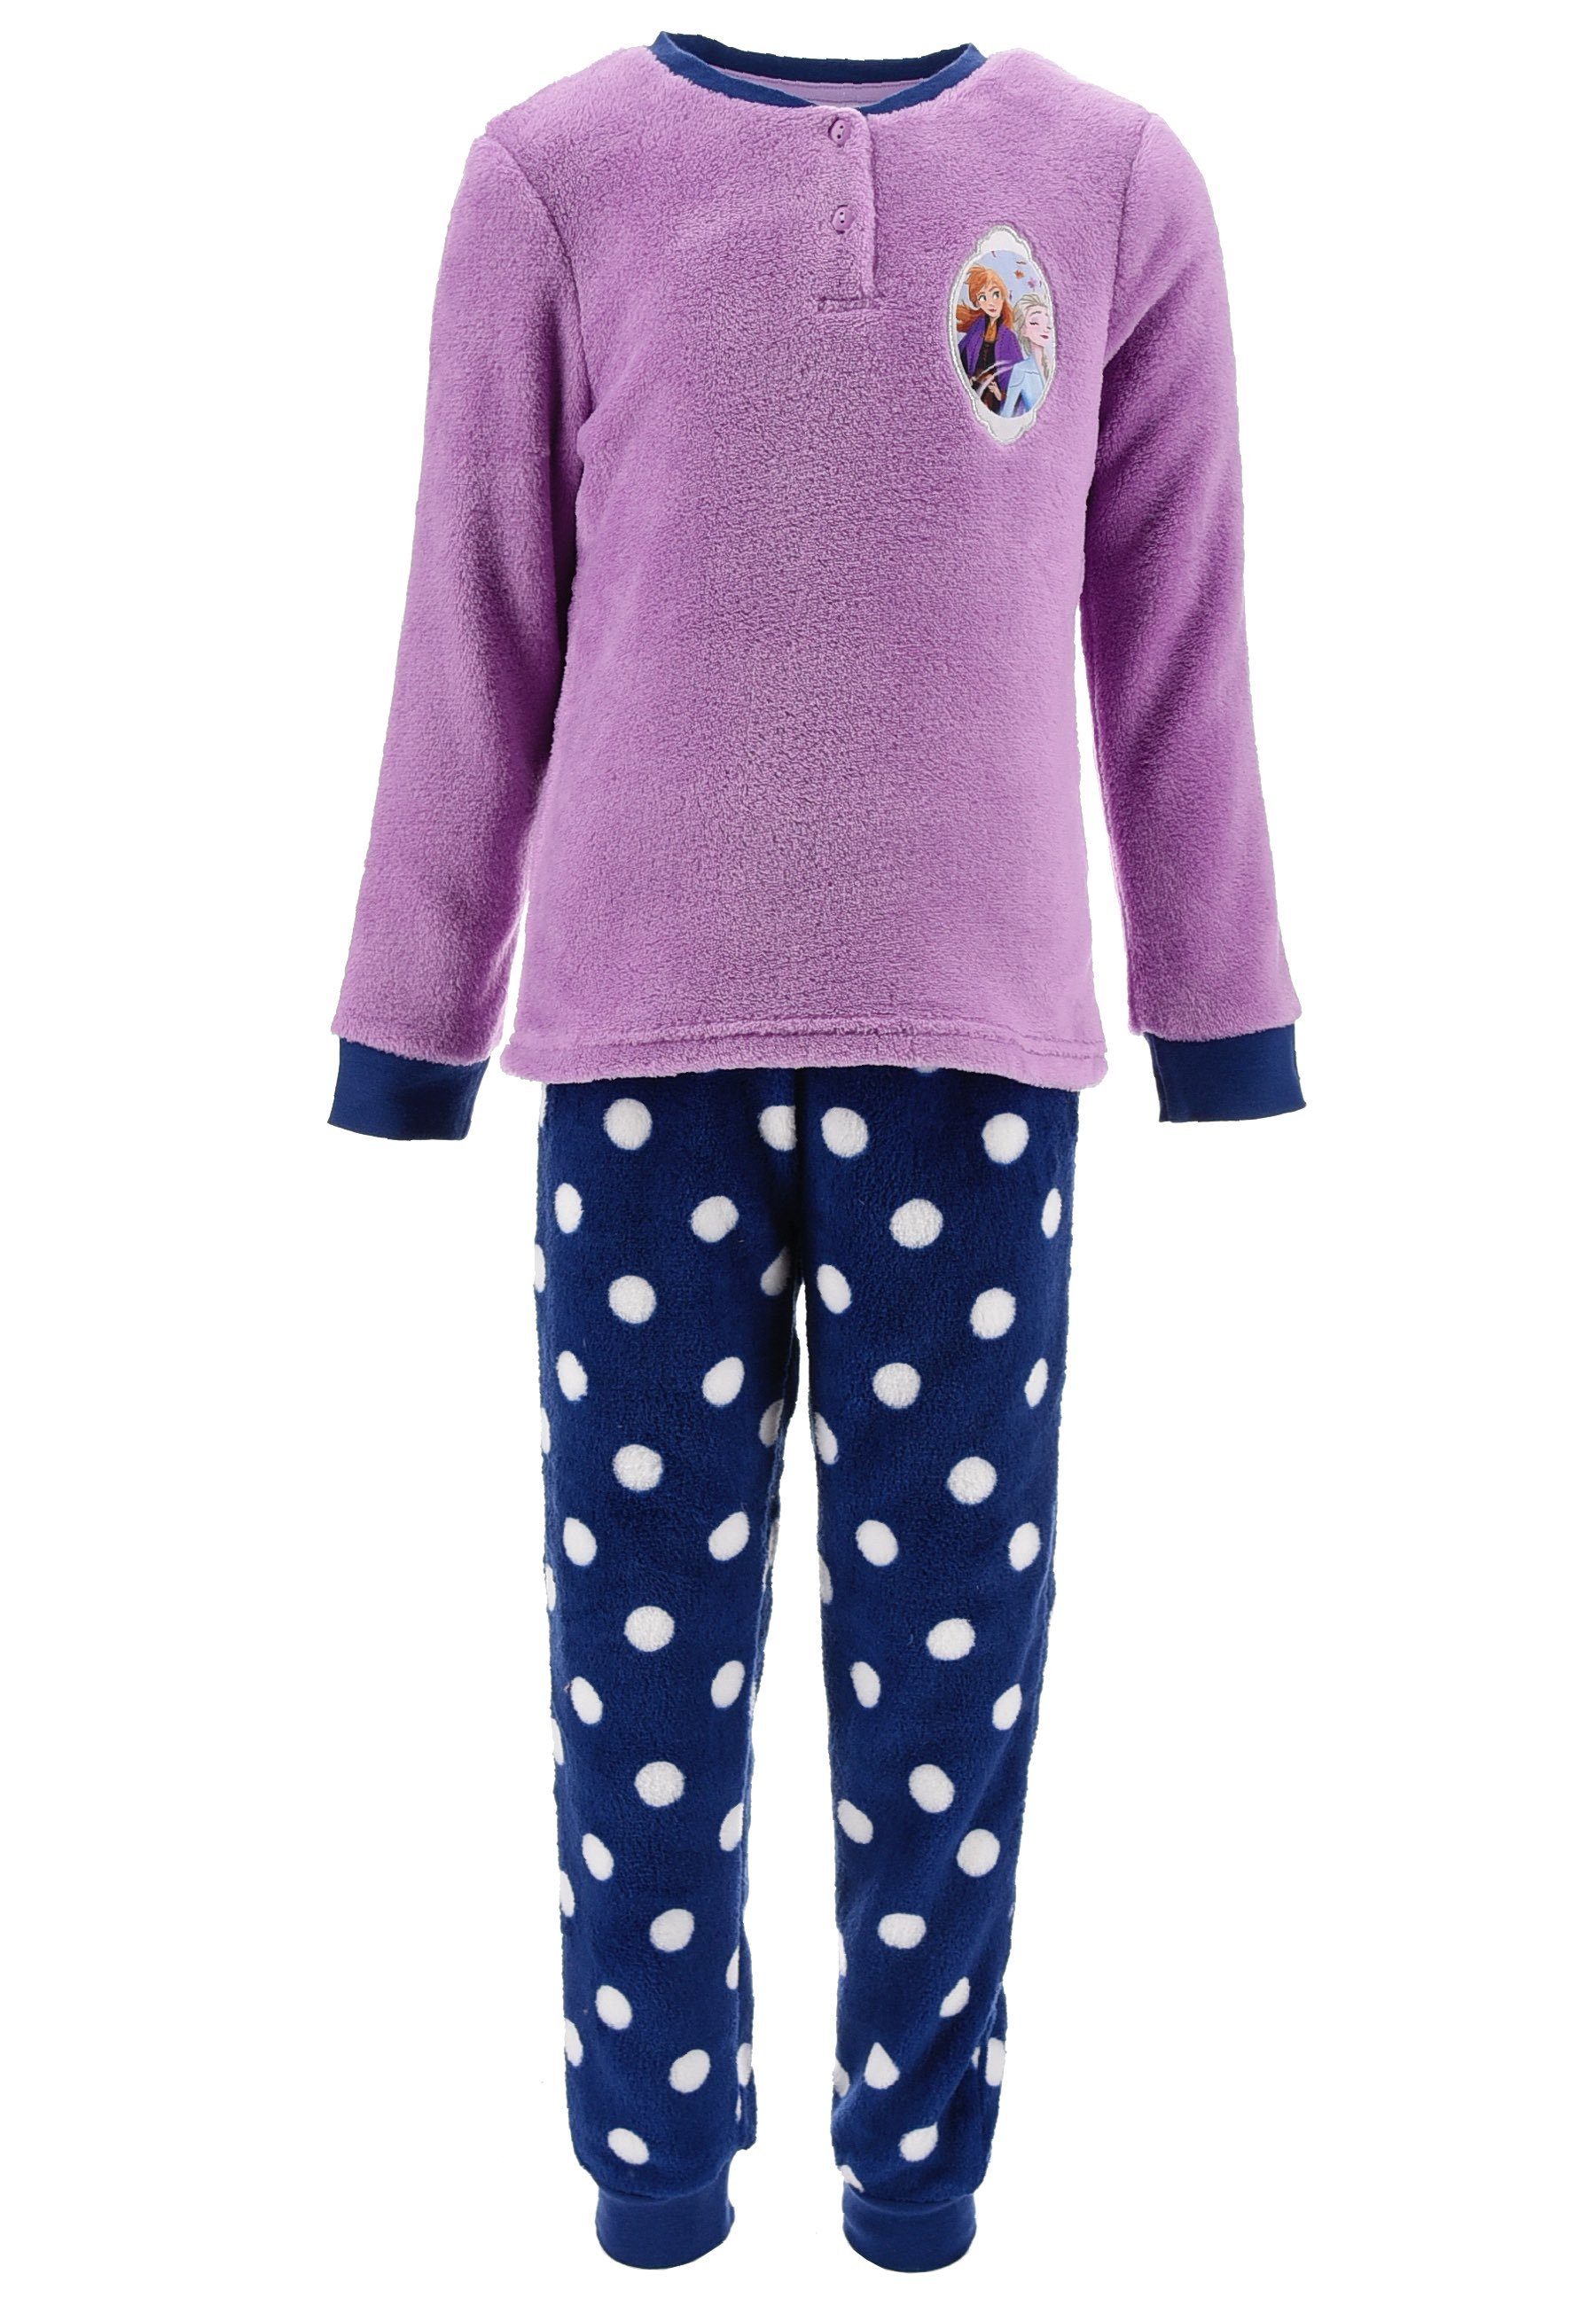 Jumpsuit Kinder 86-140 Disney Eiskönigin Schlafanzug Mädchen Einteiler Anna und ELSA Jumpsuit Mädchen Onesie Kinder Frozen Kinder Kleidung für Mädchen 